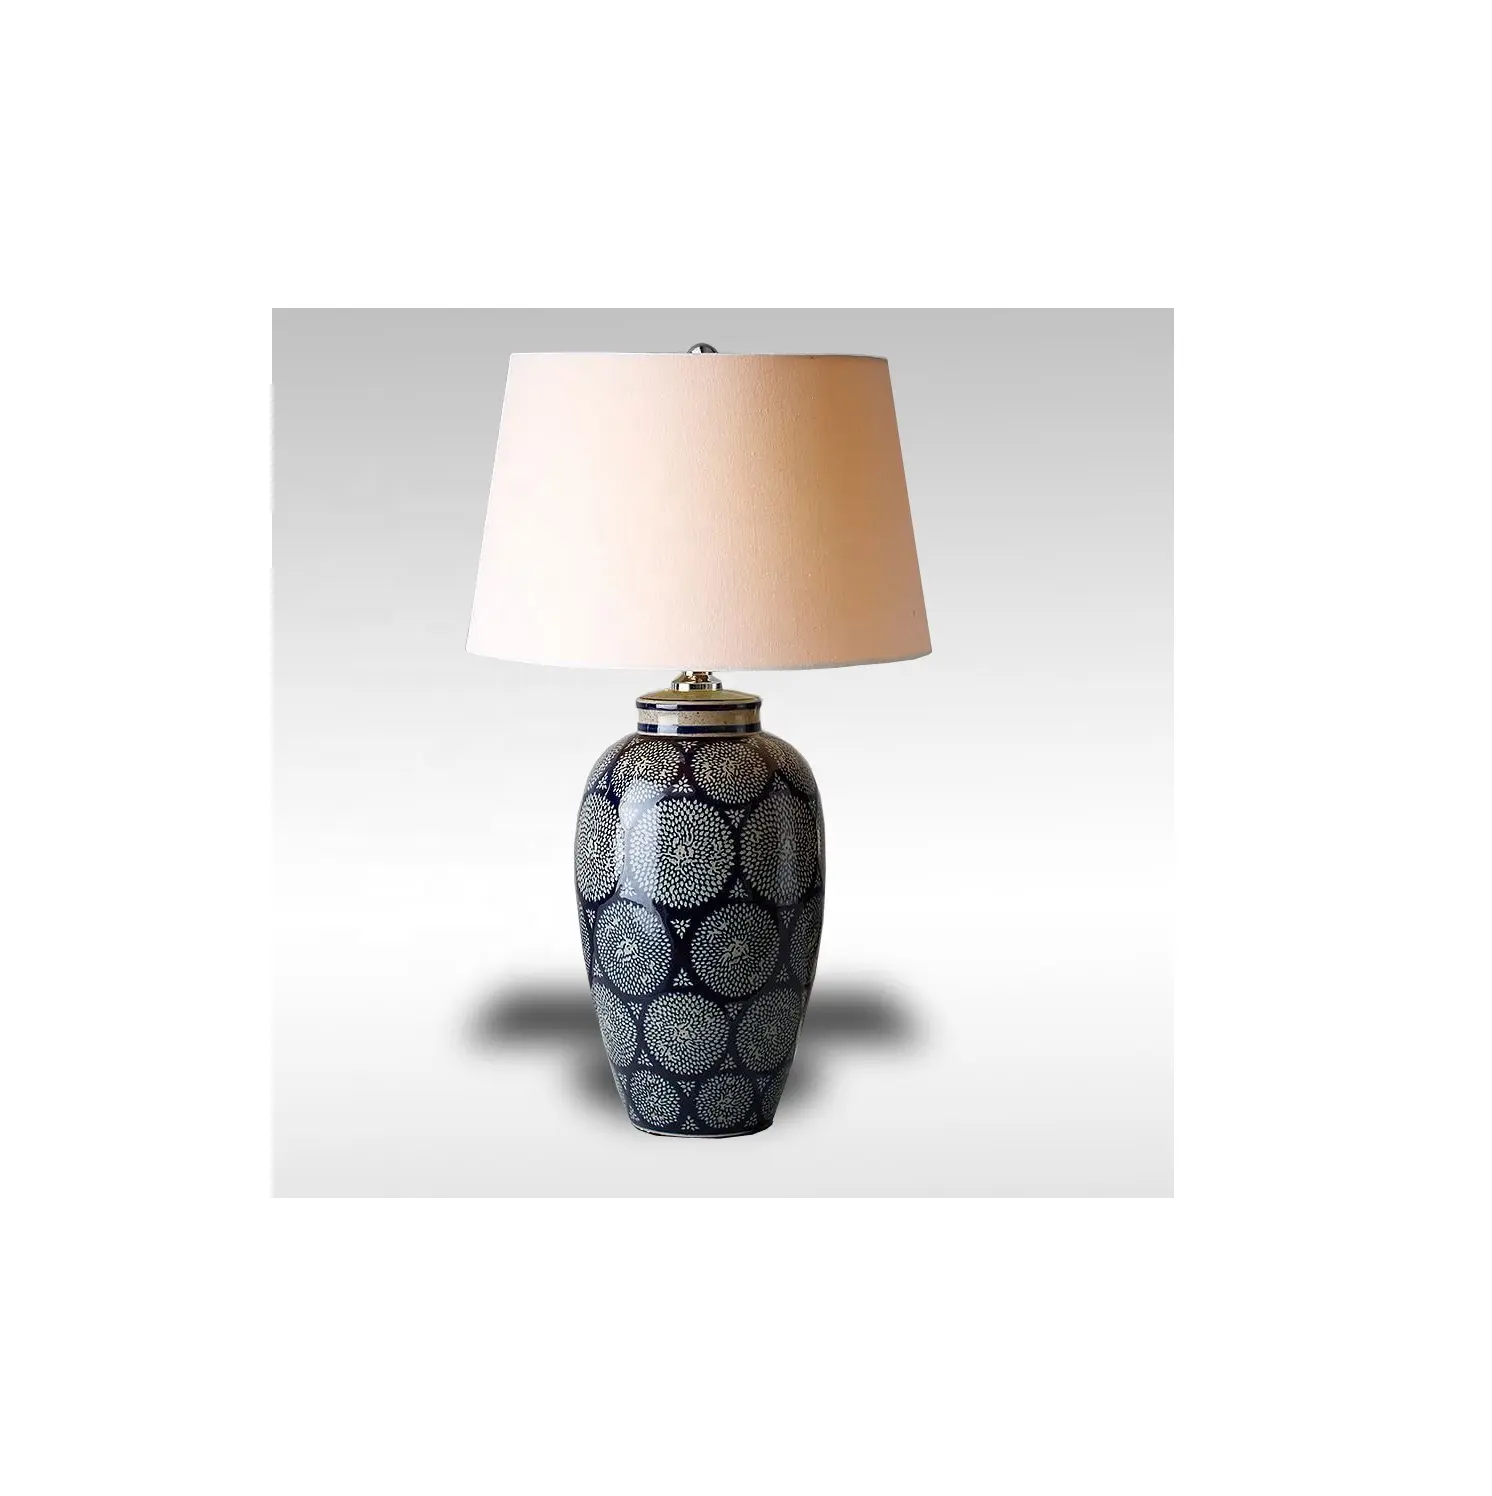 Decoración e iluminación del hogar Lámparas de mesa Lámparas de cerámica de color gris Iluminación interior Las lámparas de pie están disponibles a precios muy bajos